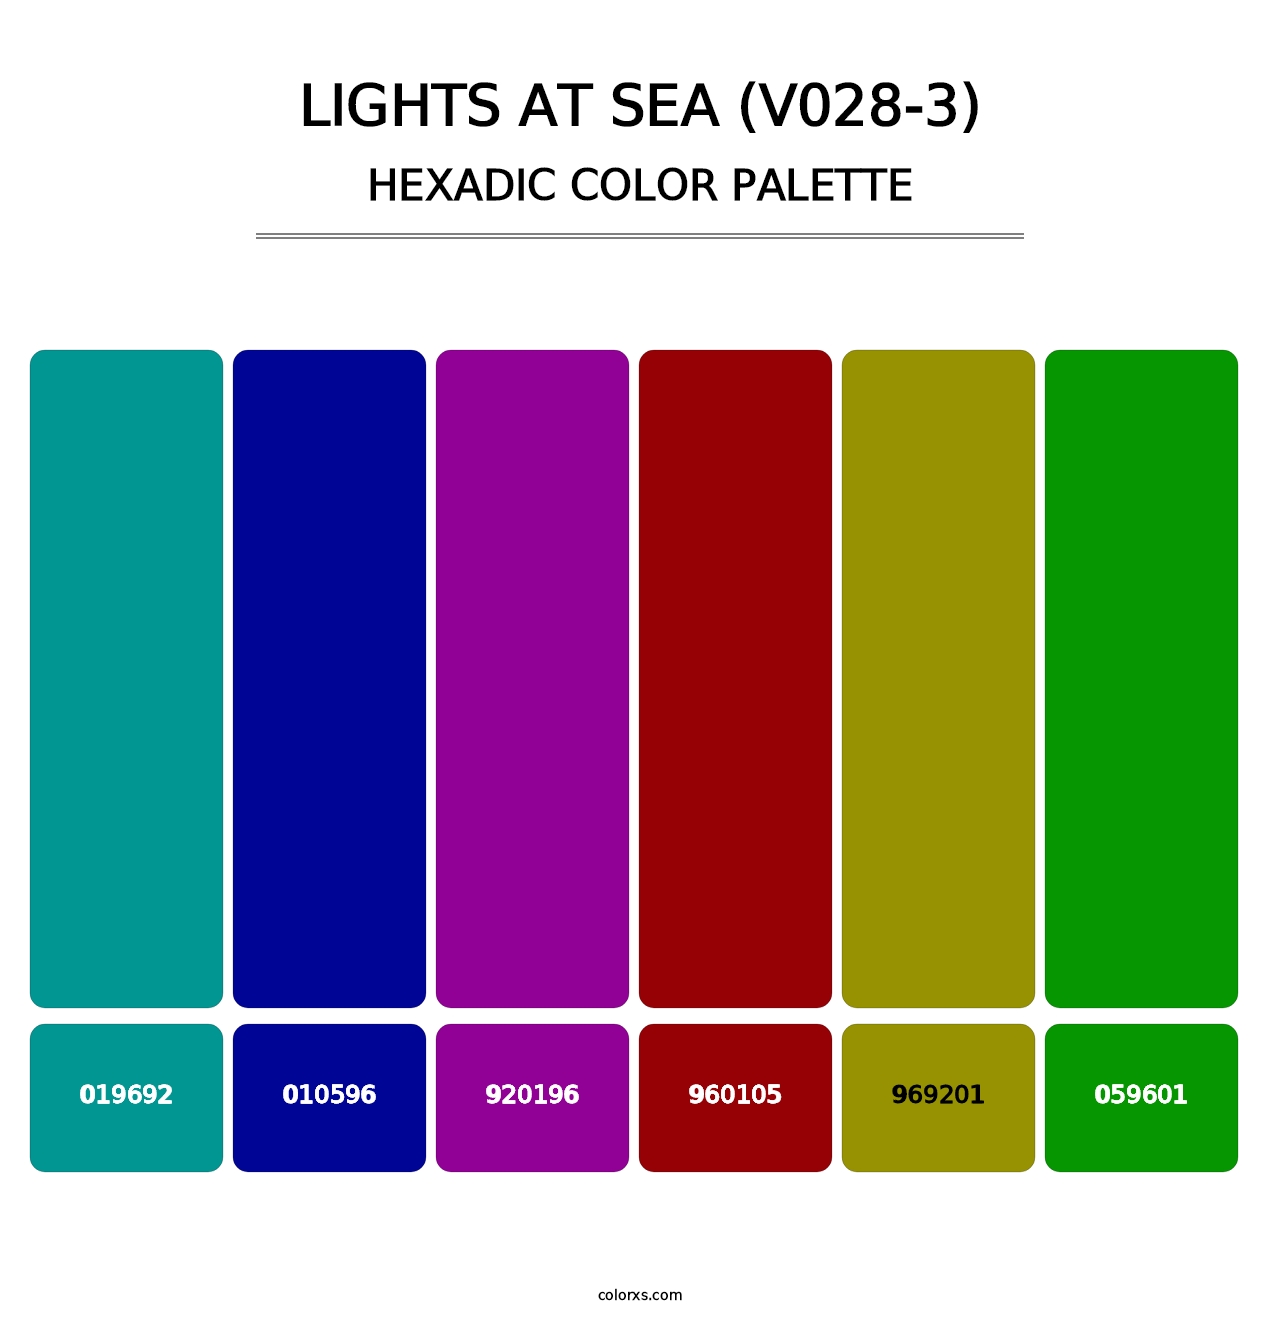 Lights at Sea (V028-3) - Hexadic Color Palette